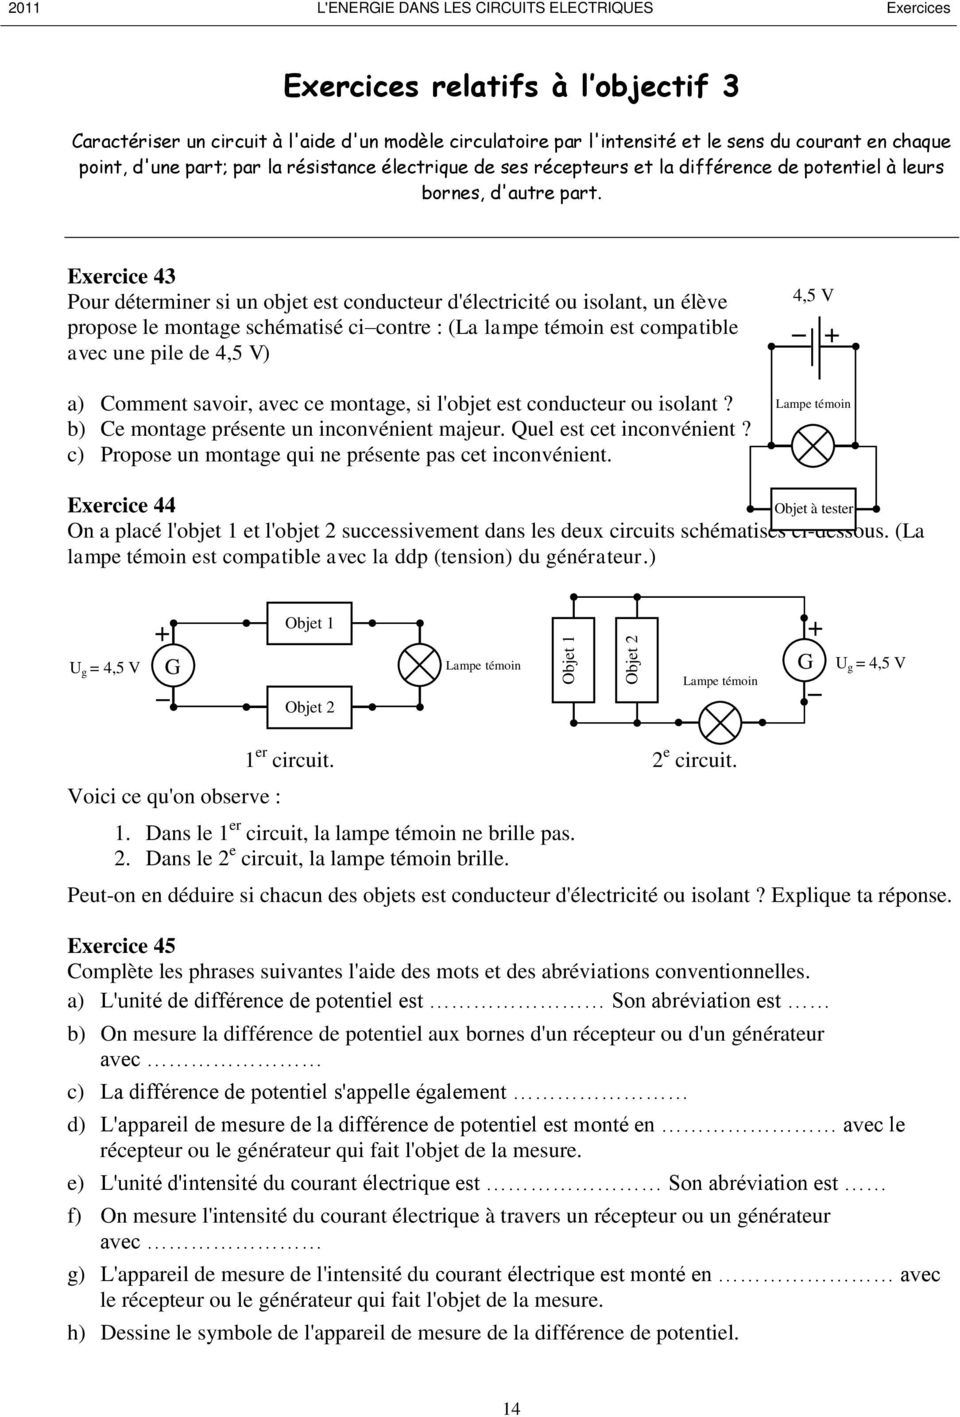 Exercice 43 Pour déterminer si un objet est conducteur d'électricité ou isolant, un élève propose le montage schématisé cicontre : (La lampe témoin est compatible avec une pile de 4,5 V) a) Comment